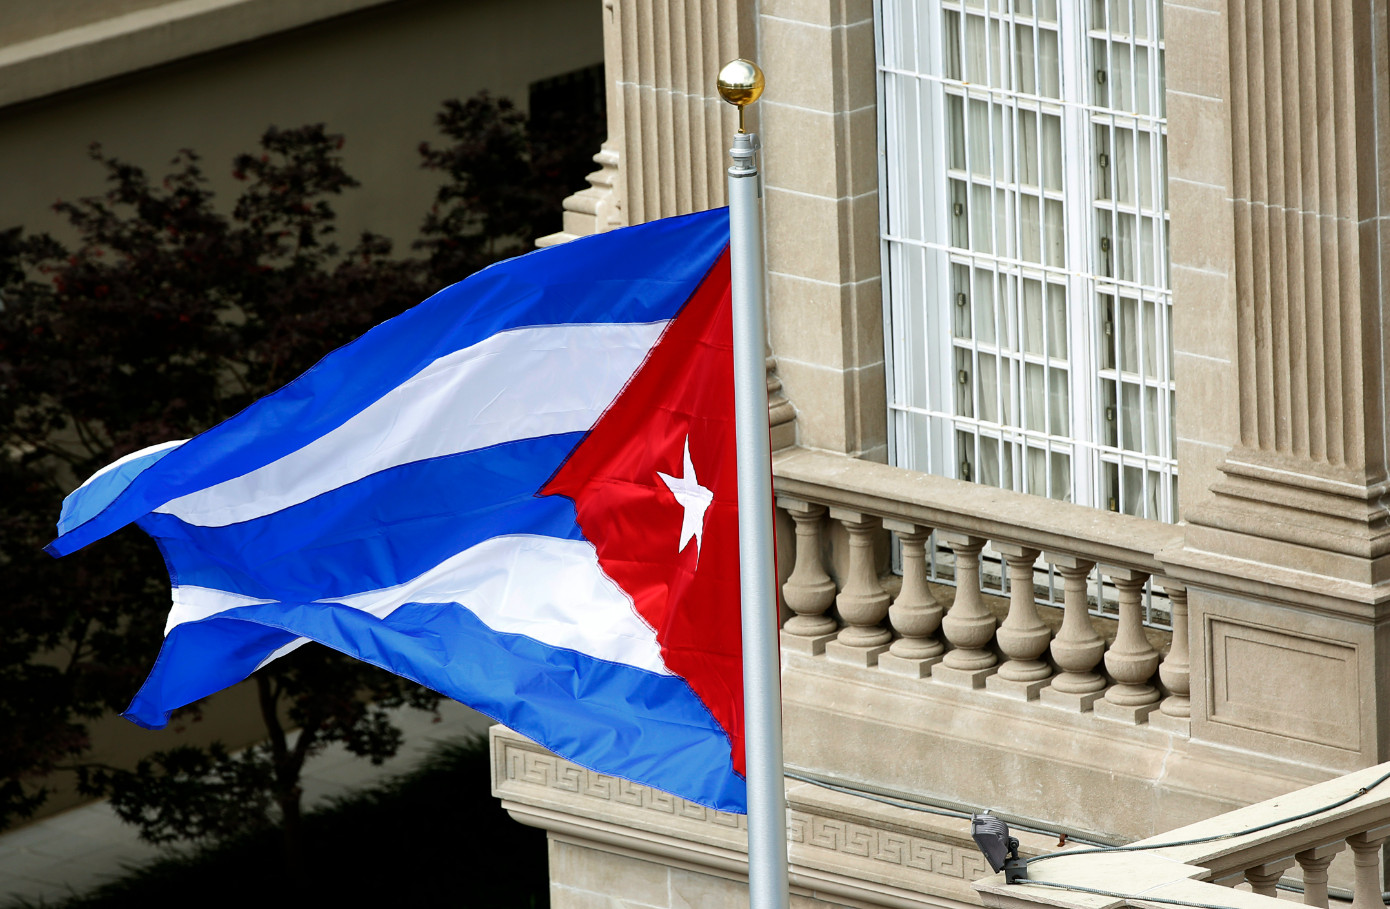 Κούβα: Οι ΗΠΑ «μαλακώνουν» το εμπάργκο στο νησί της Καραϊβικής